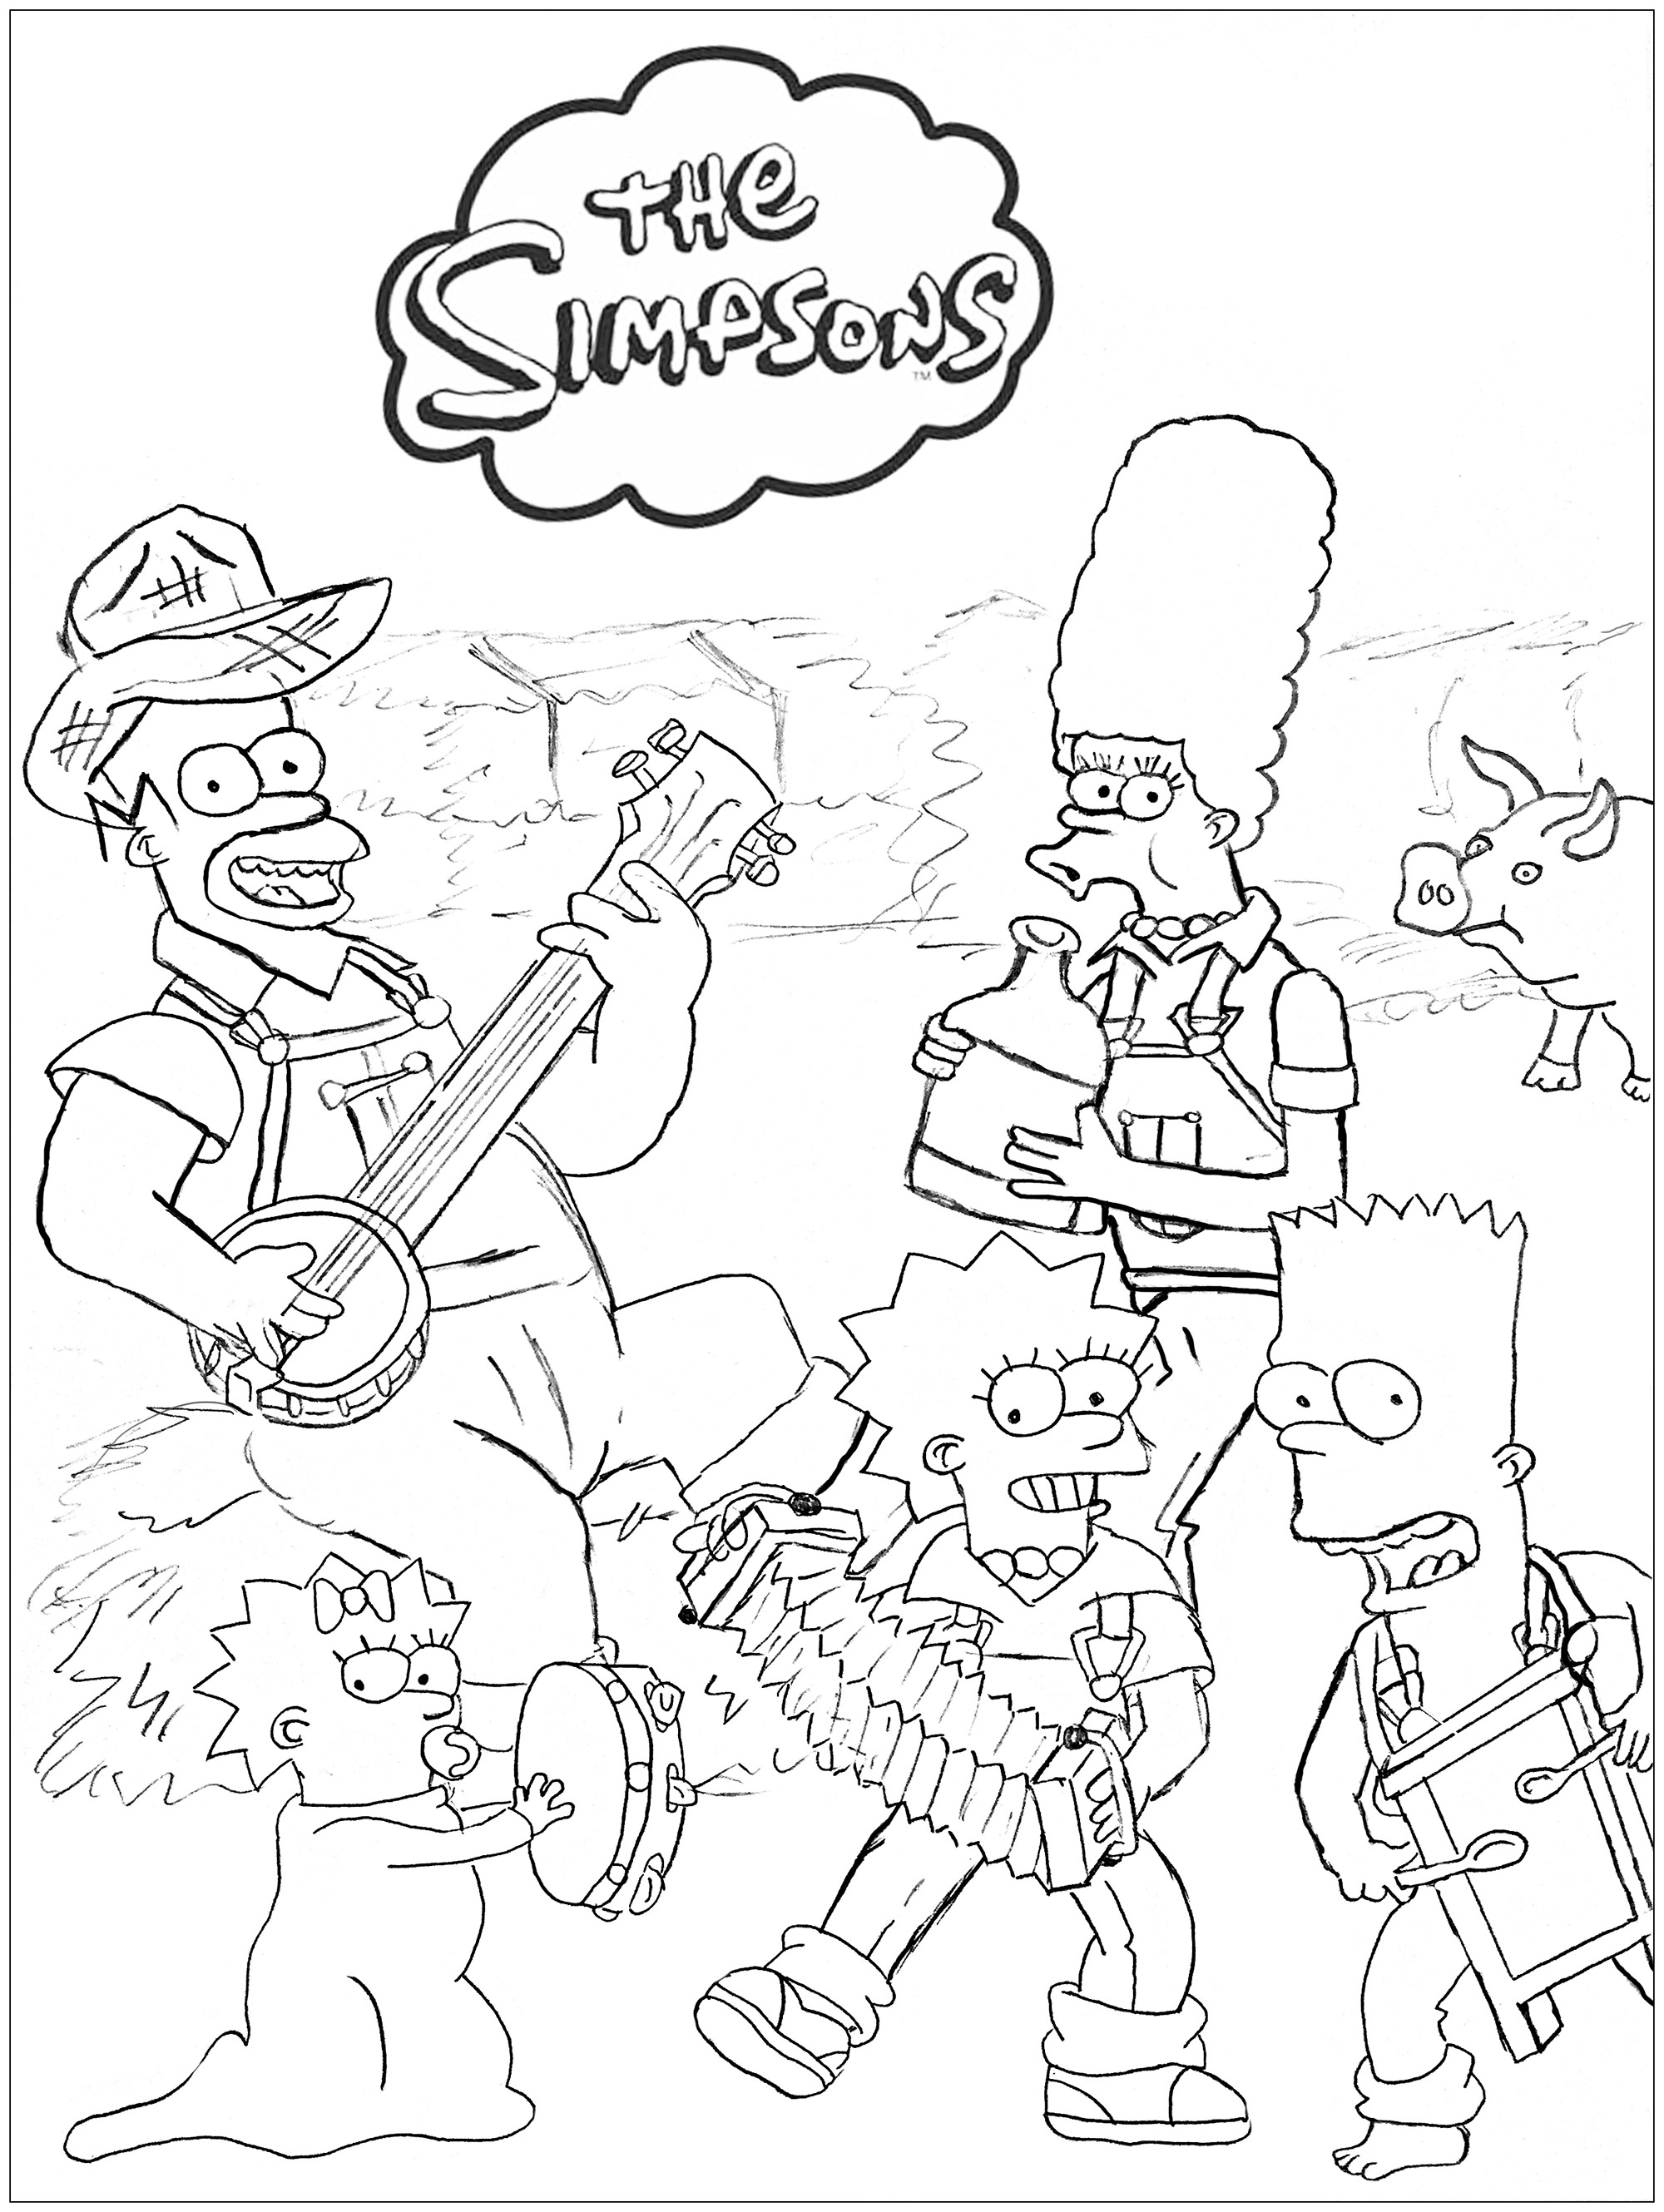 Les Simpsons à la ferme : un dessin original créé par Romain